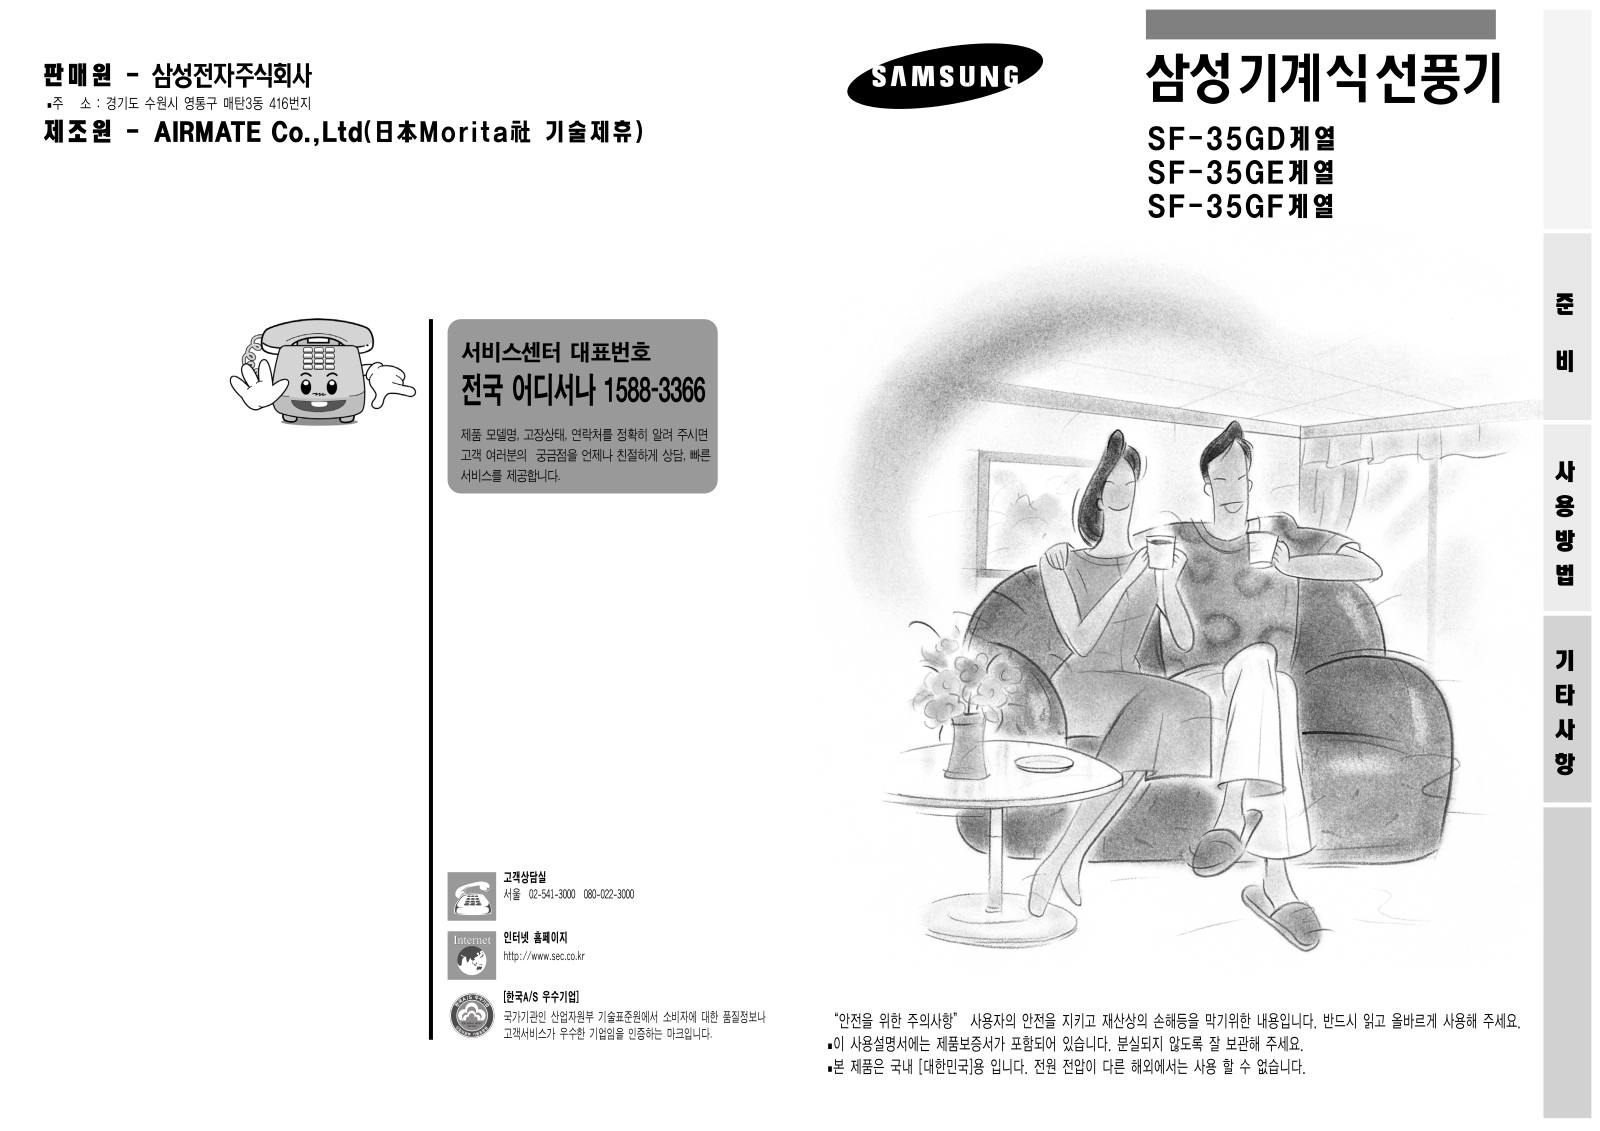 Samsung SF-35GD7, SF-35GF7, SF-35GD7B User Manual